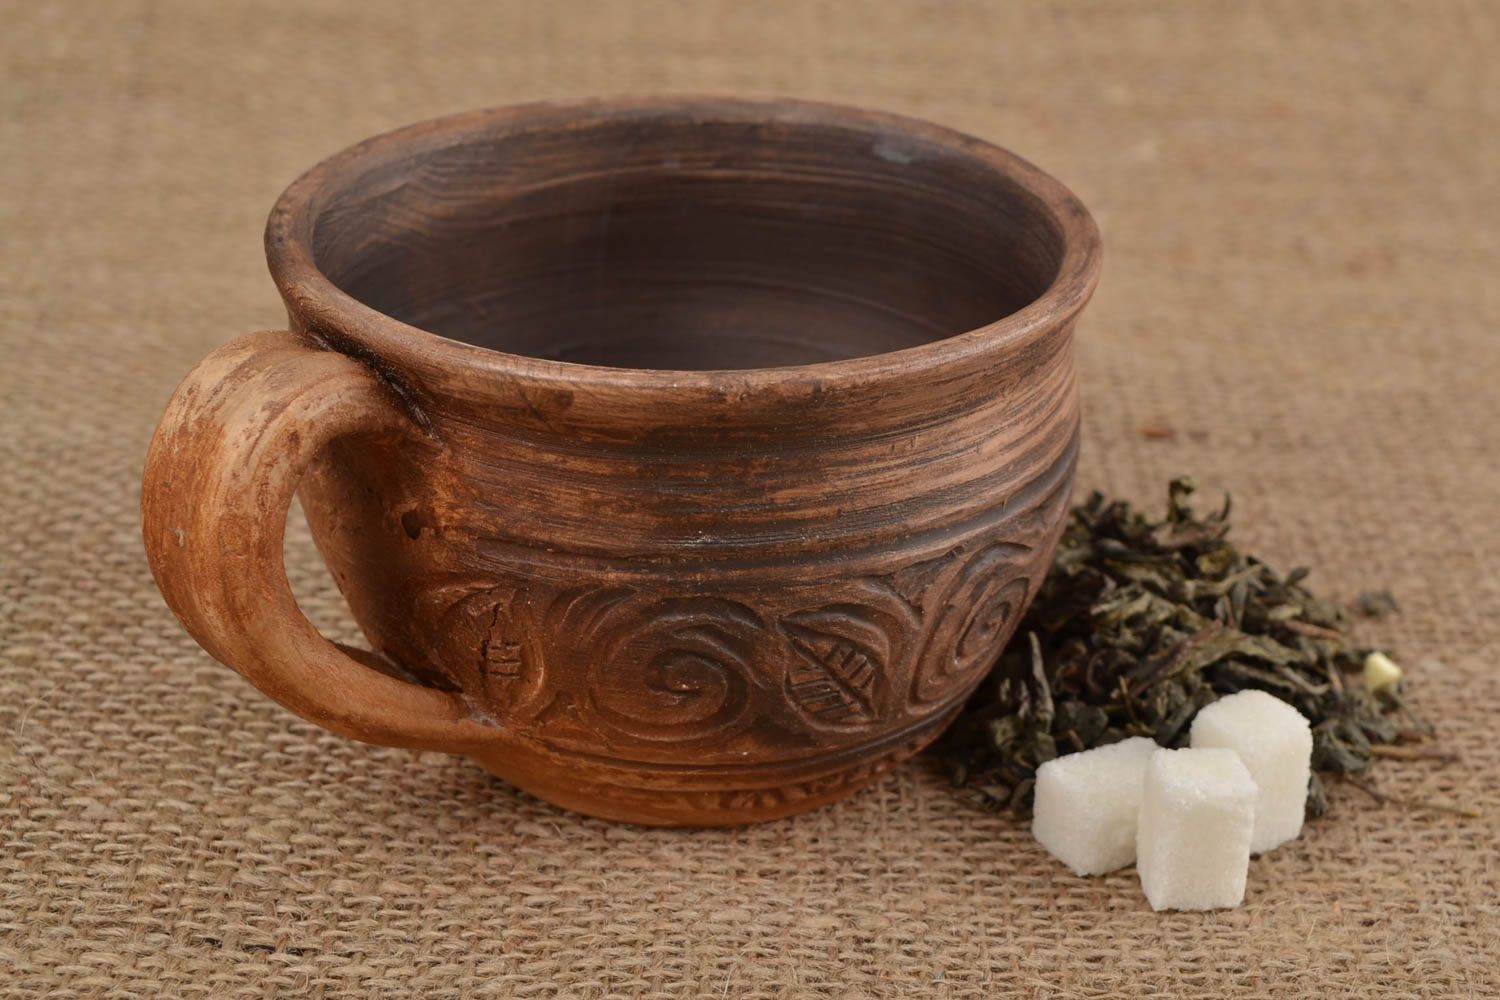 Глиняная чашка ручной работы красивая большая в этно стиле авторская молочение фото 1